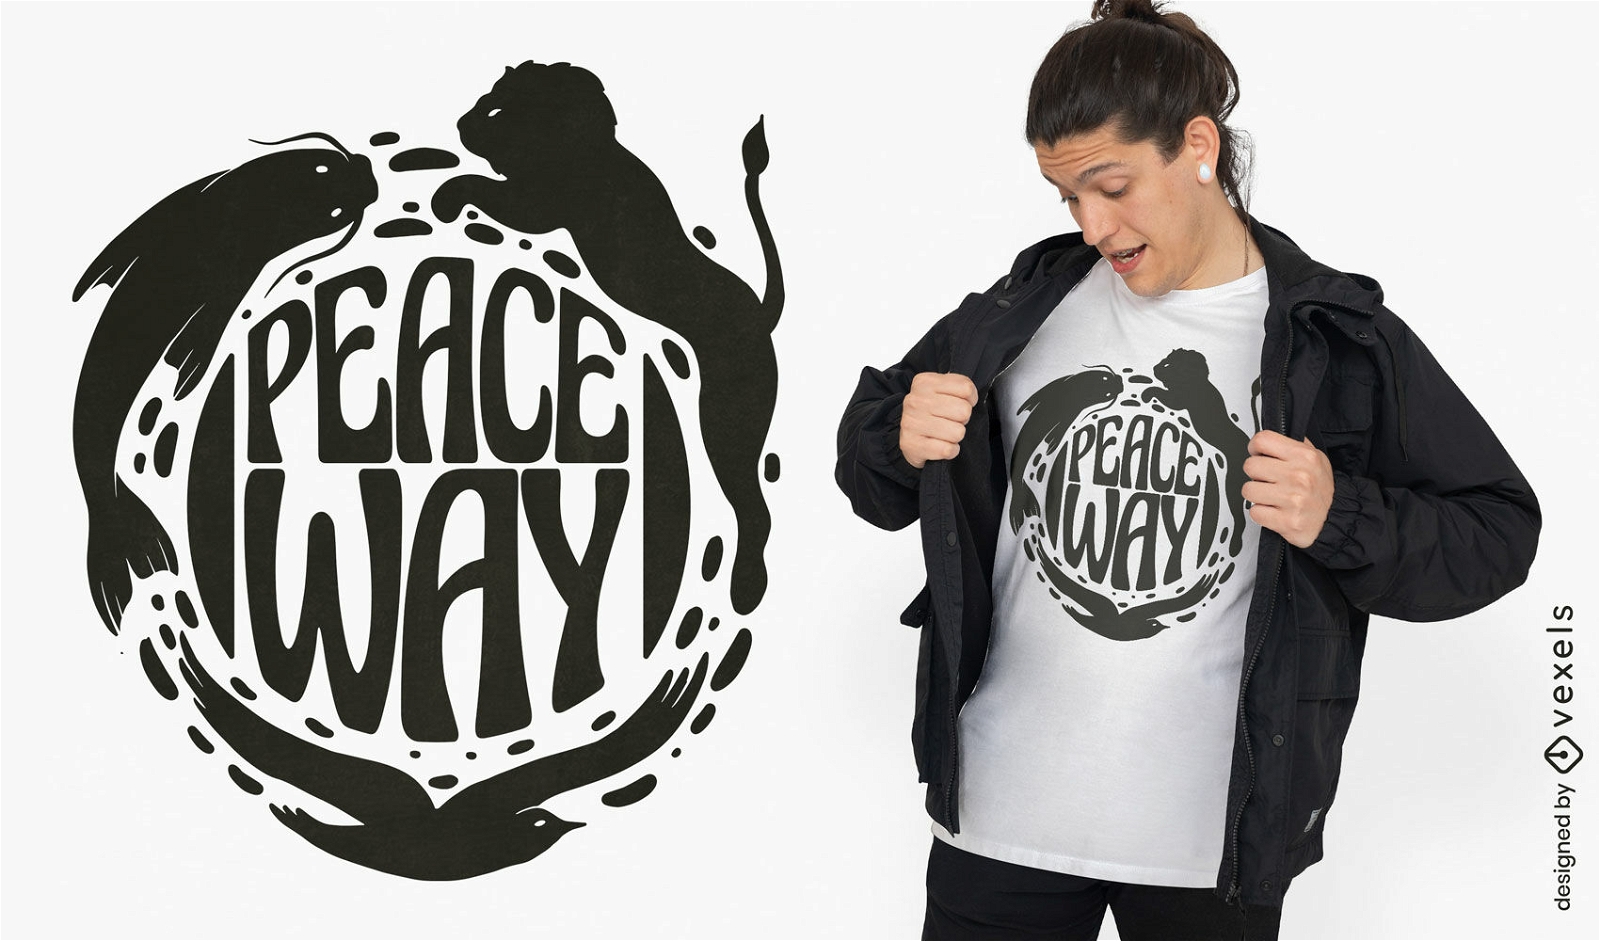 Peace way t-shirt design